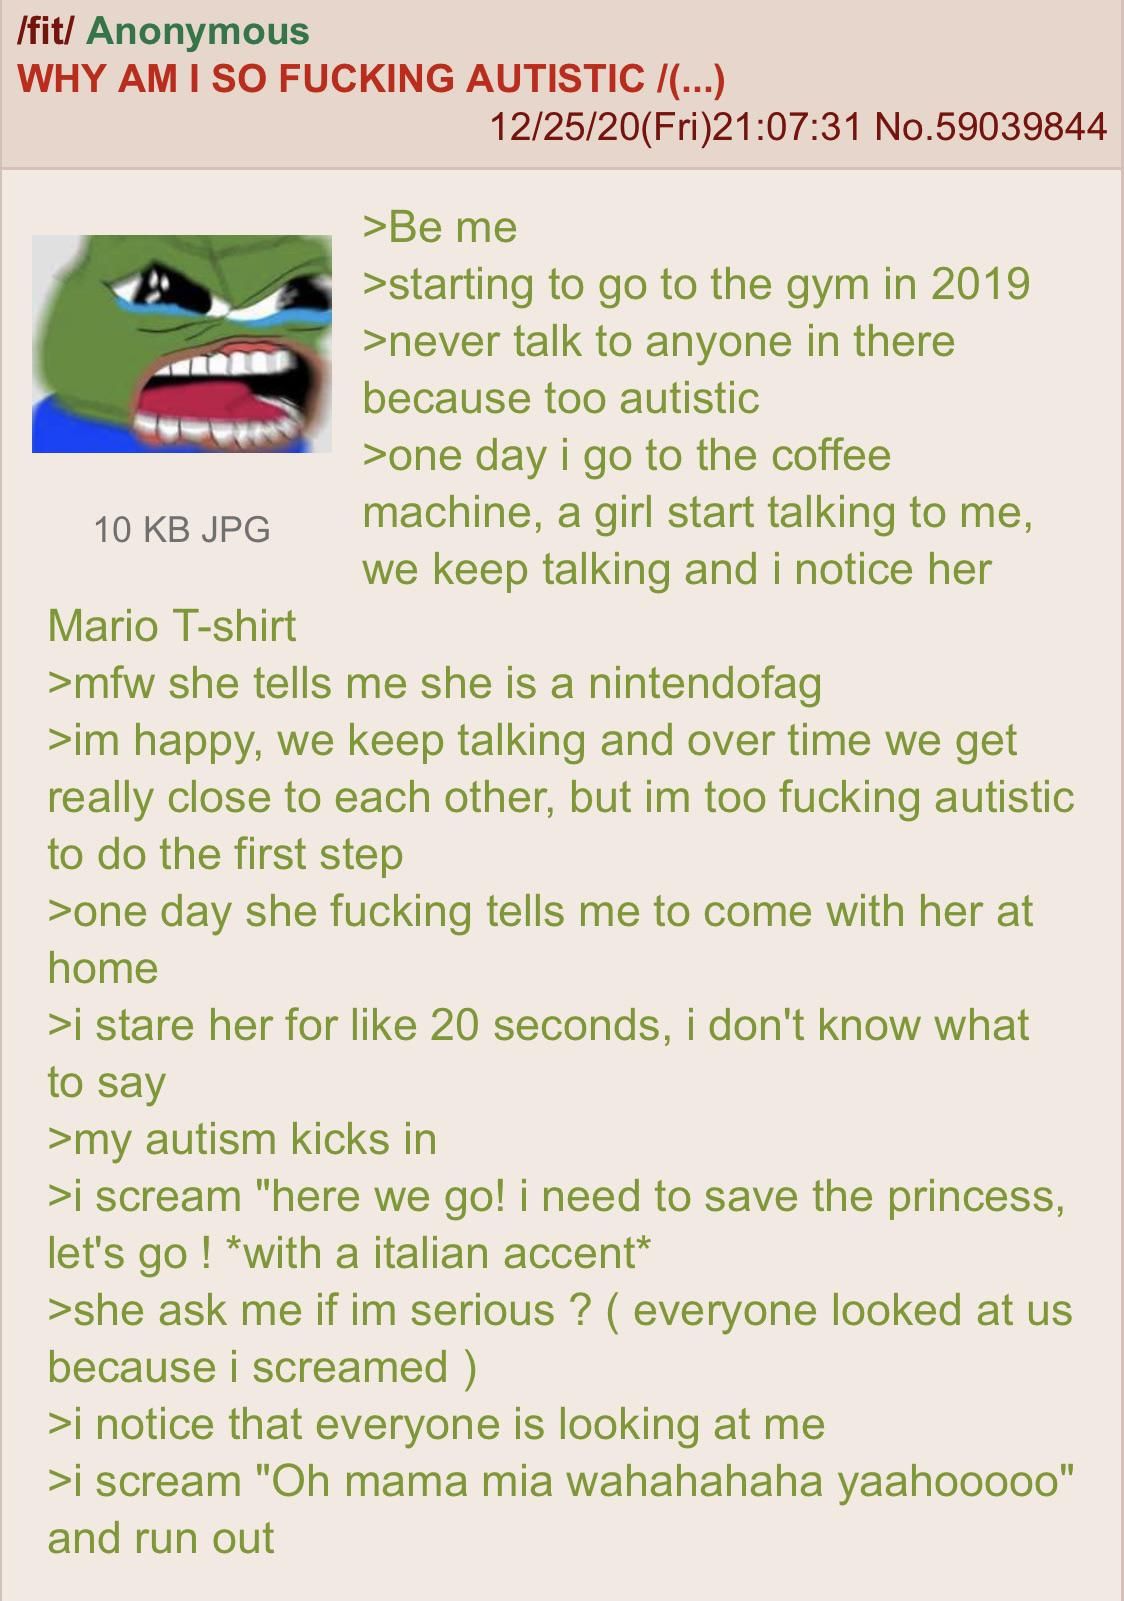 Anon has severe autism